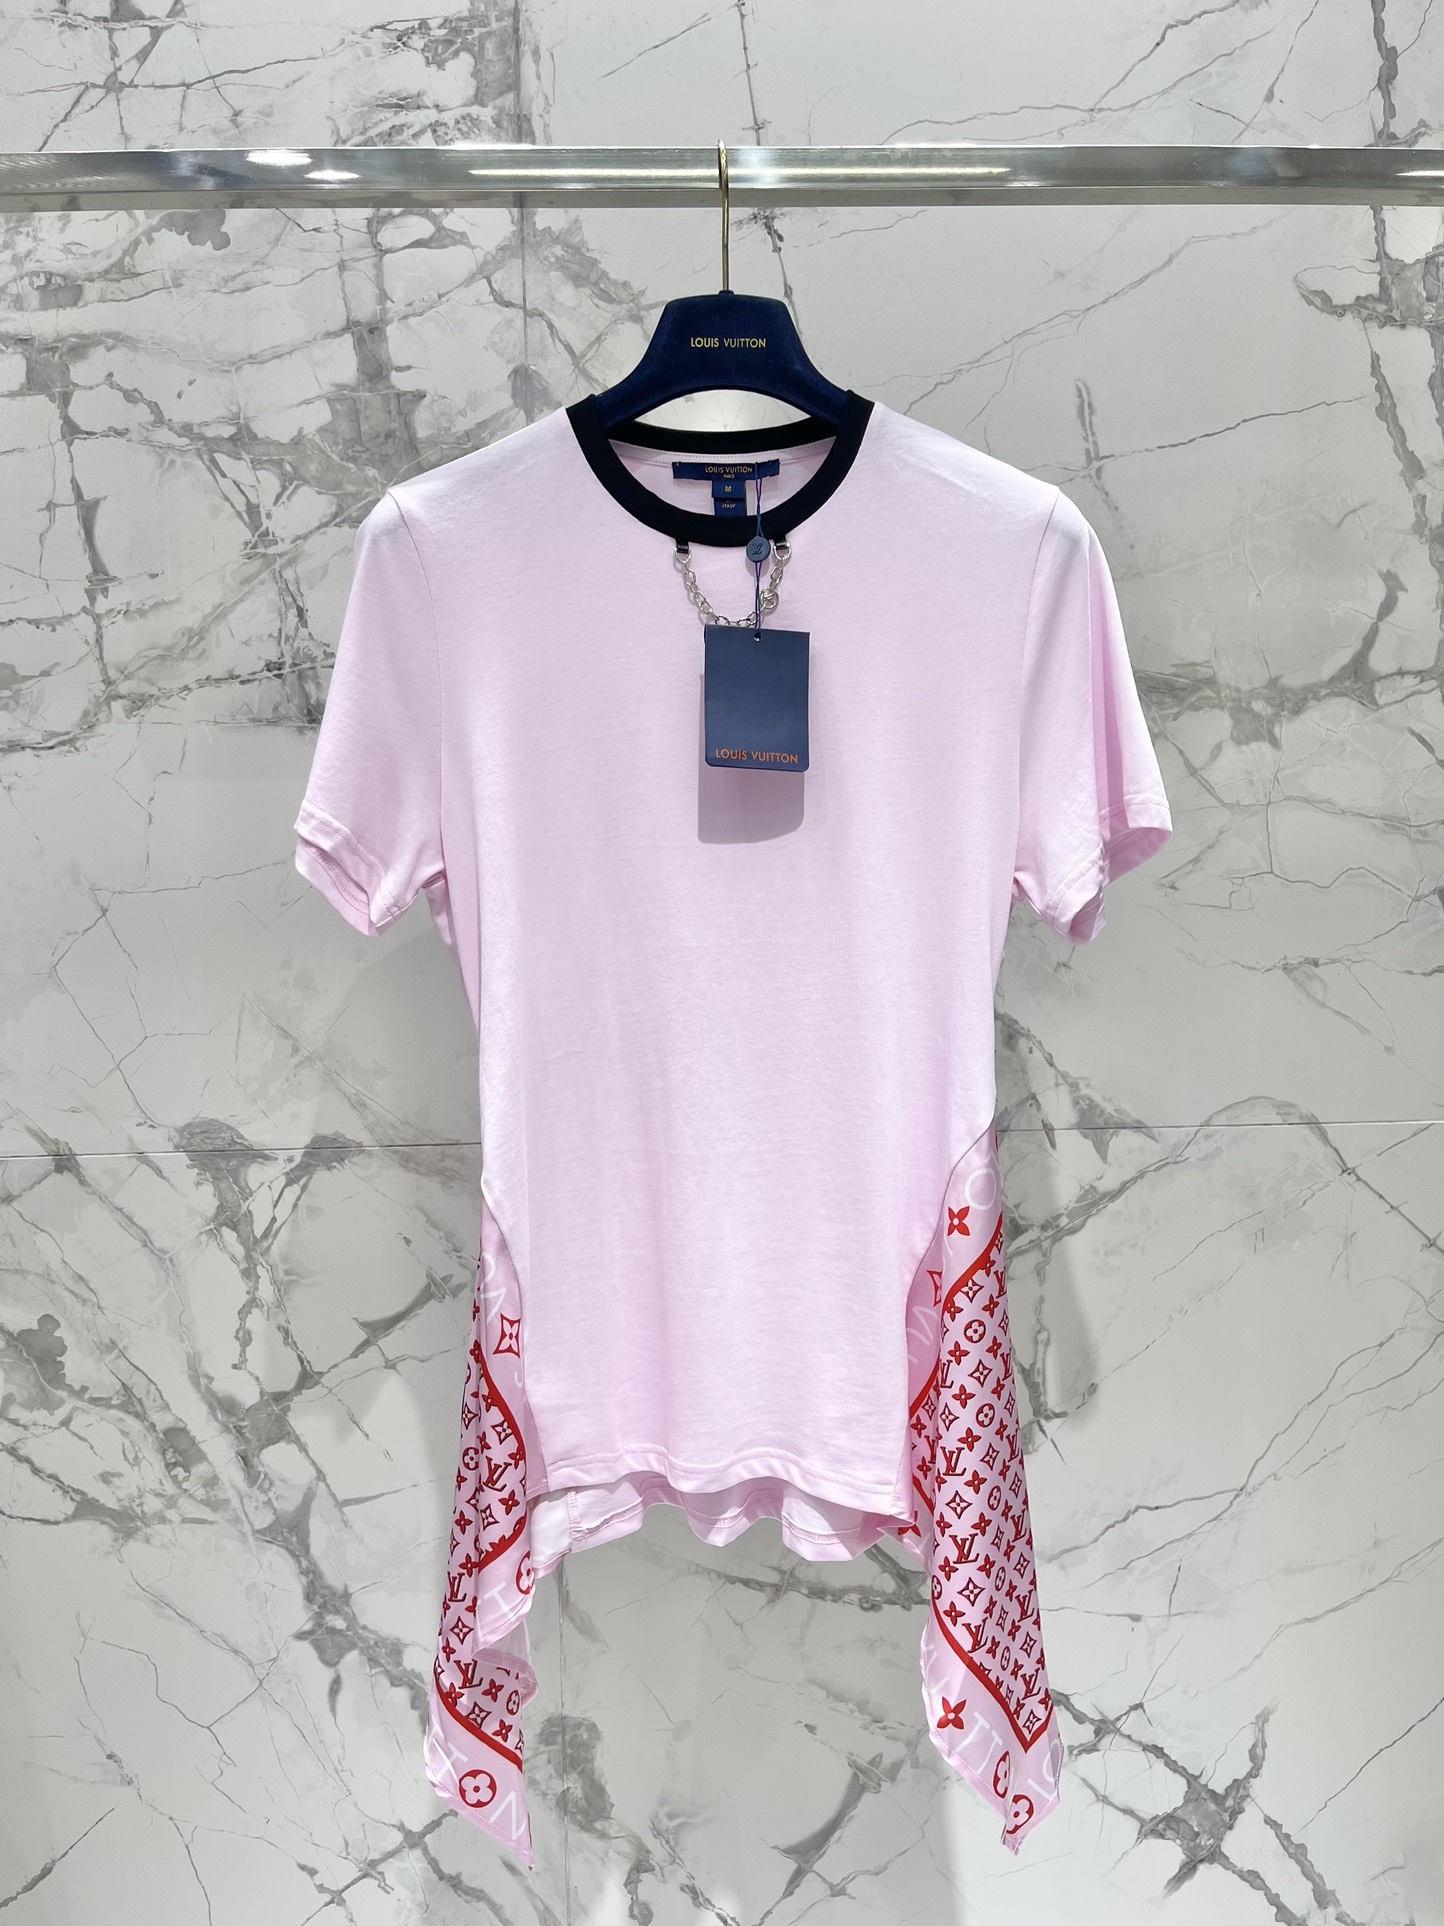 Louis Vuitton Kleding Jurk Zwart Roze Zilver Splijten Fashion Kettingen